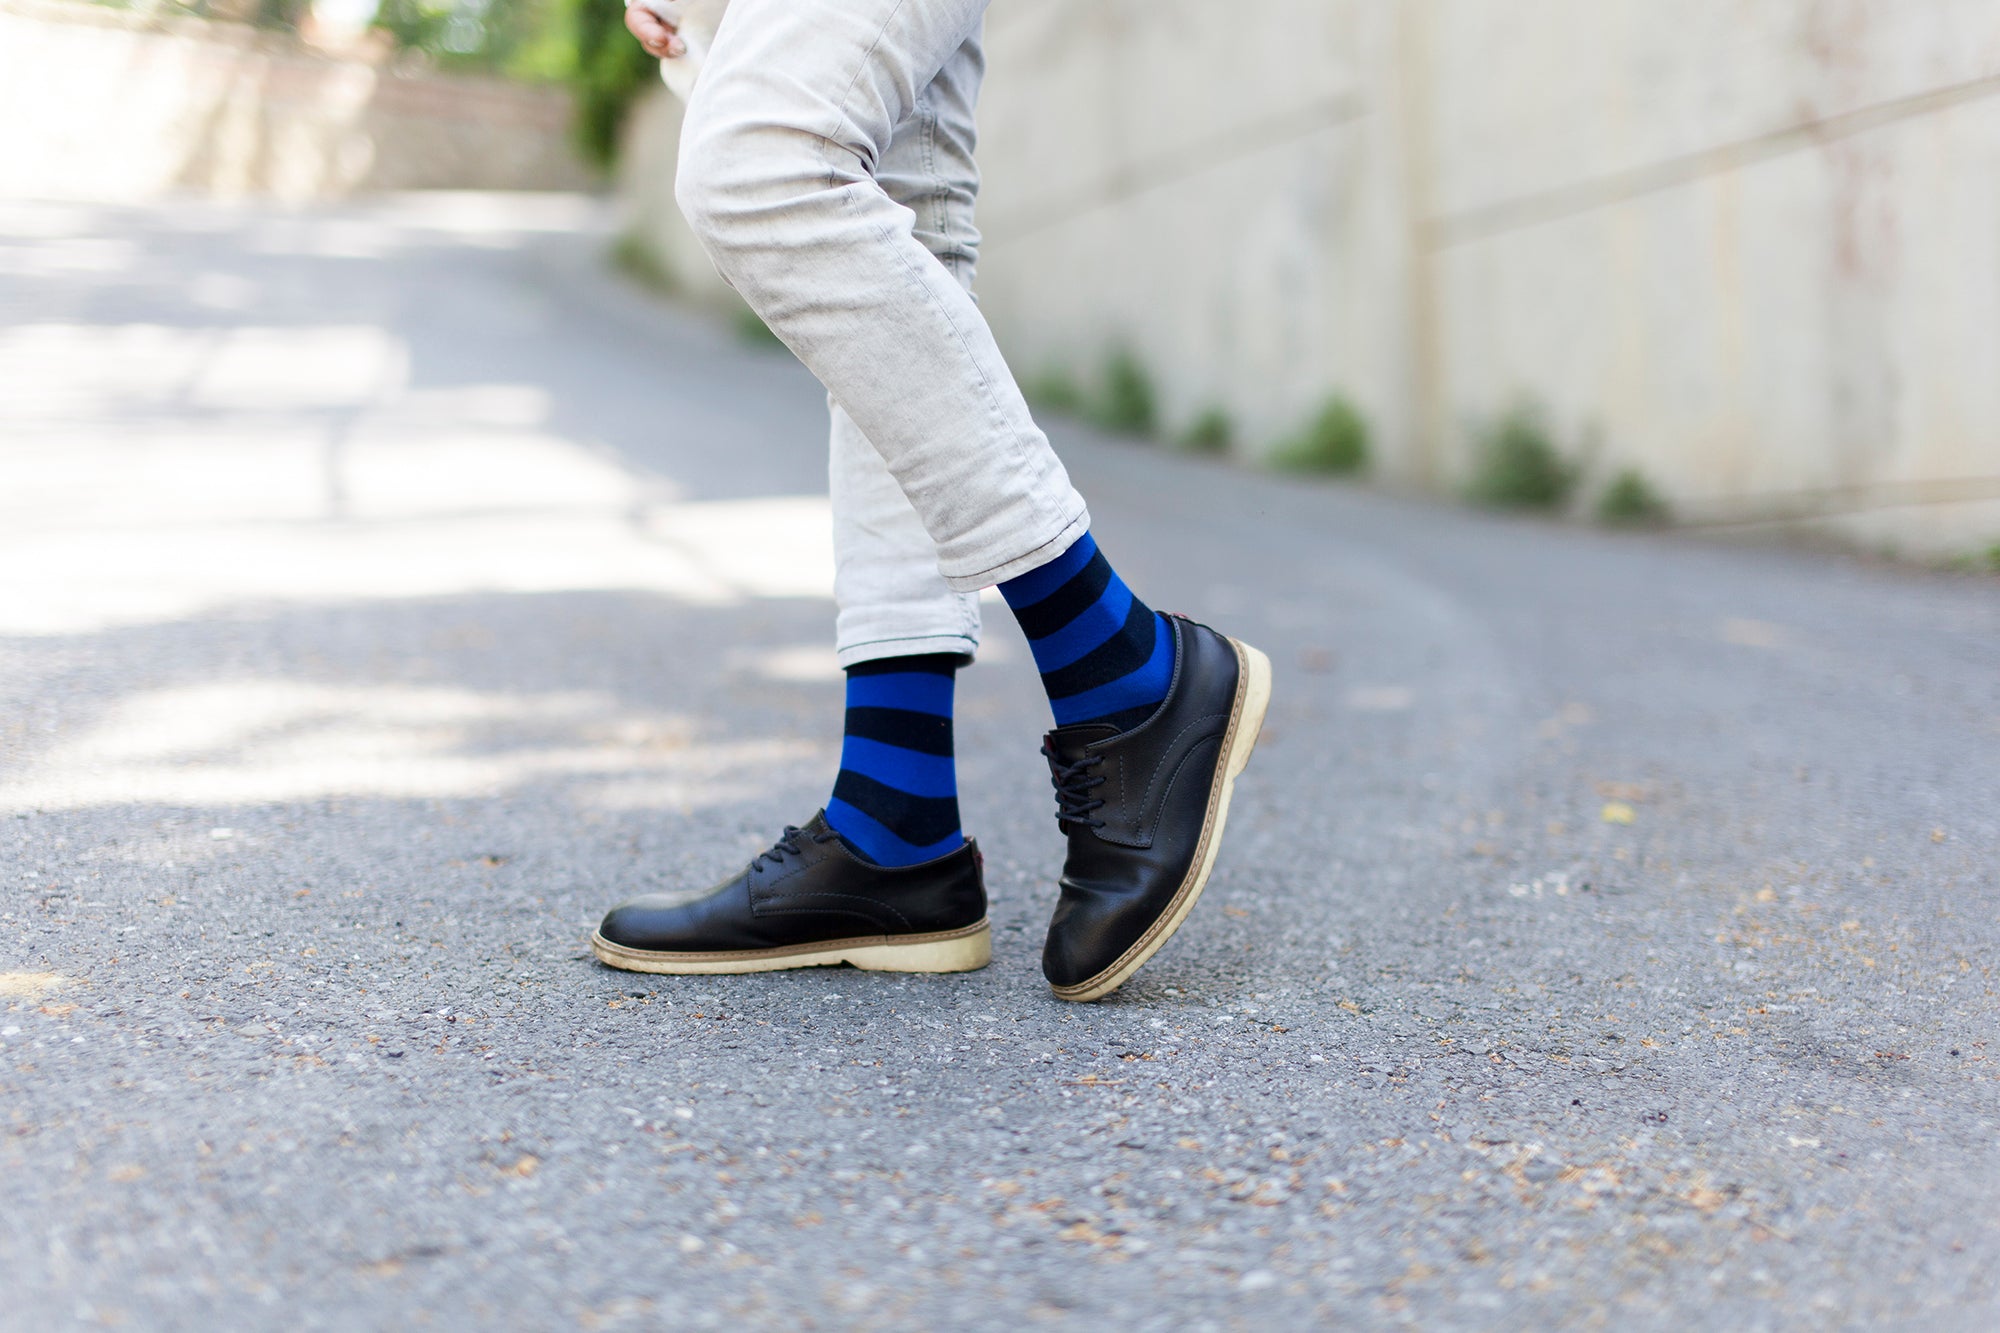 Men's Trendy Stripes Socks - Socks n Socks